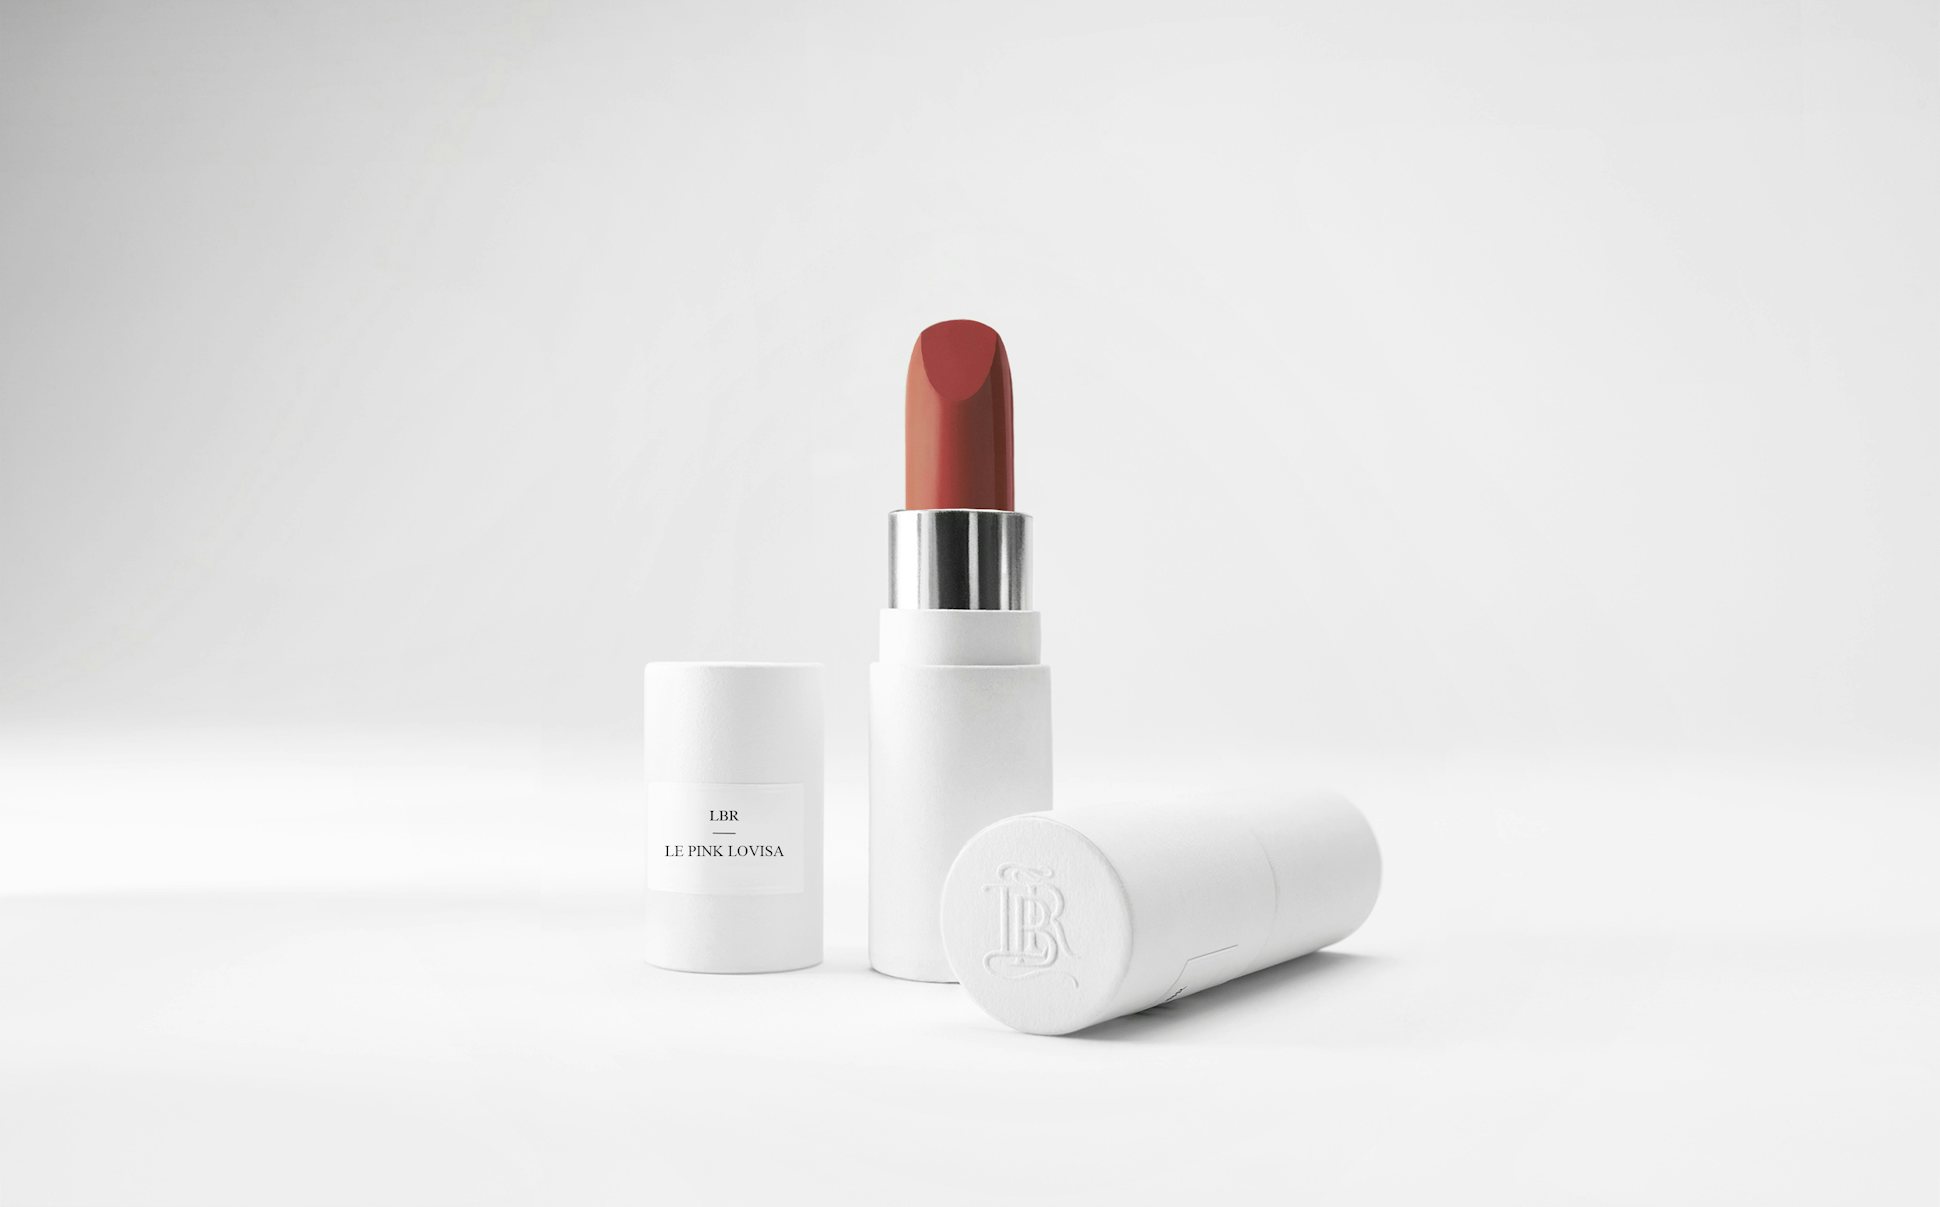 La bouche rouge Le Rose Lovisa lipstick in the white paper case